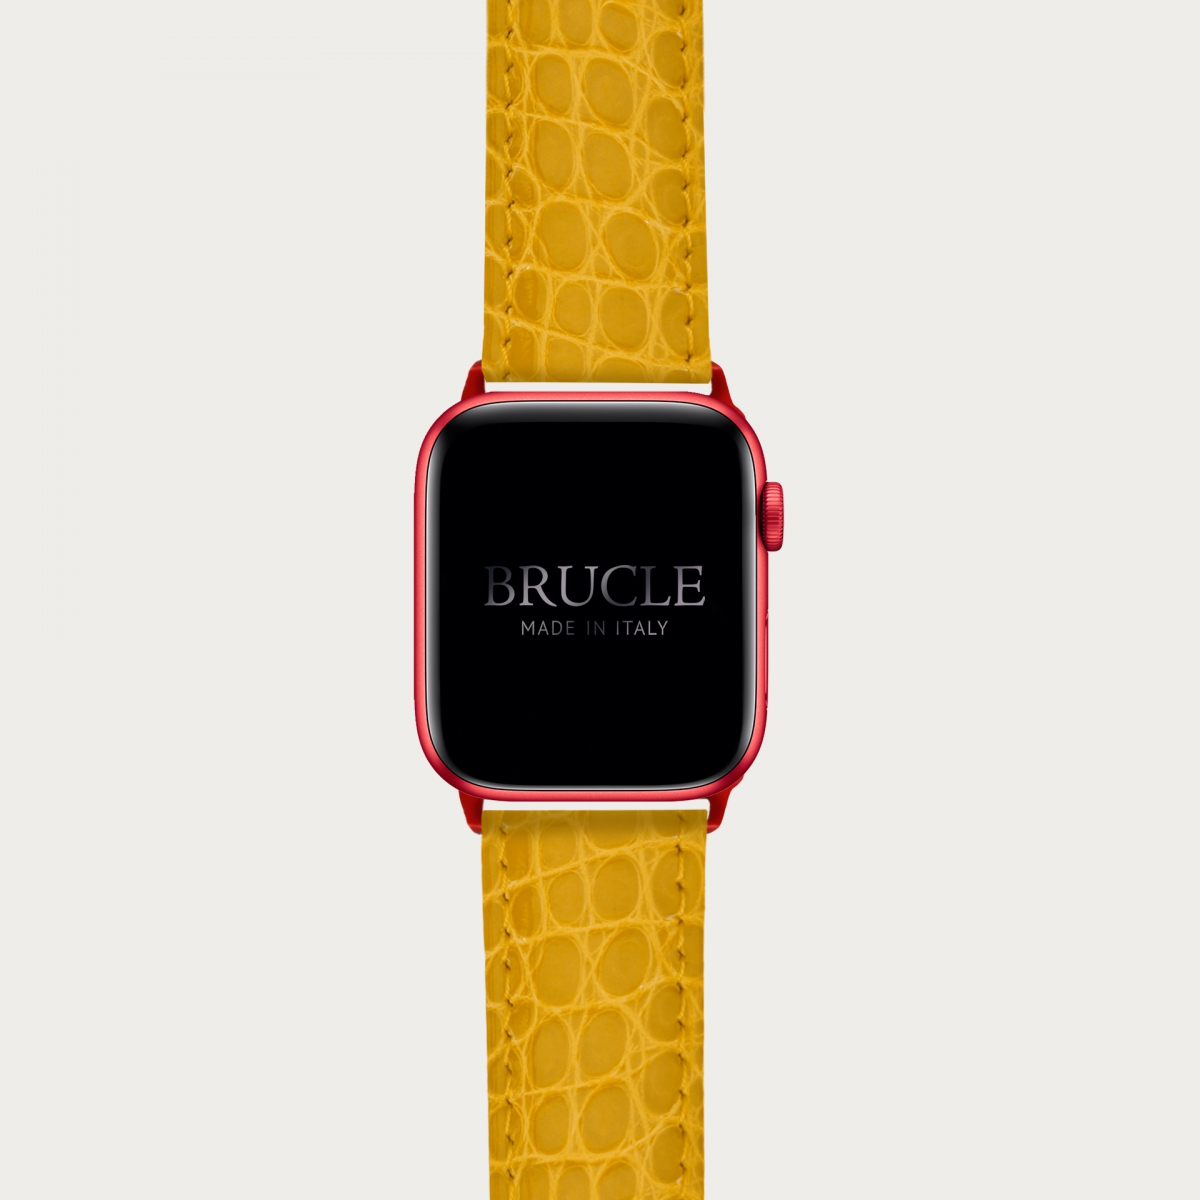 Brucle Armband kompatibel mit Apple Watch / Samsung Smartwatch, gelb alligator